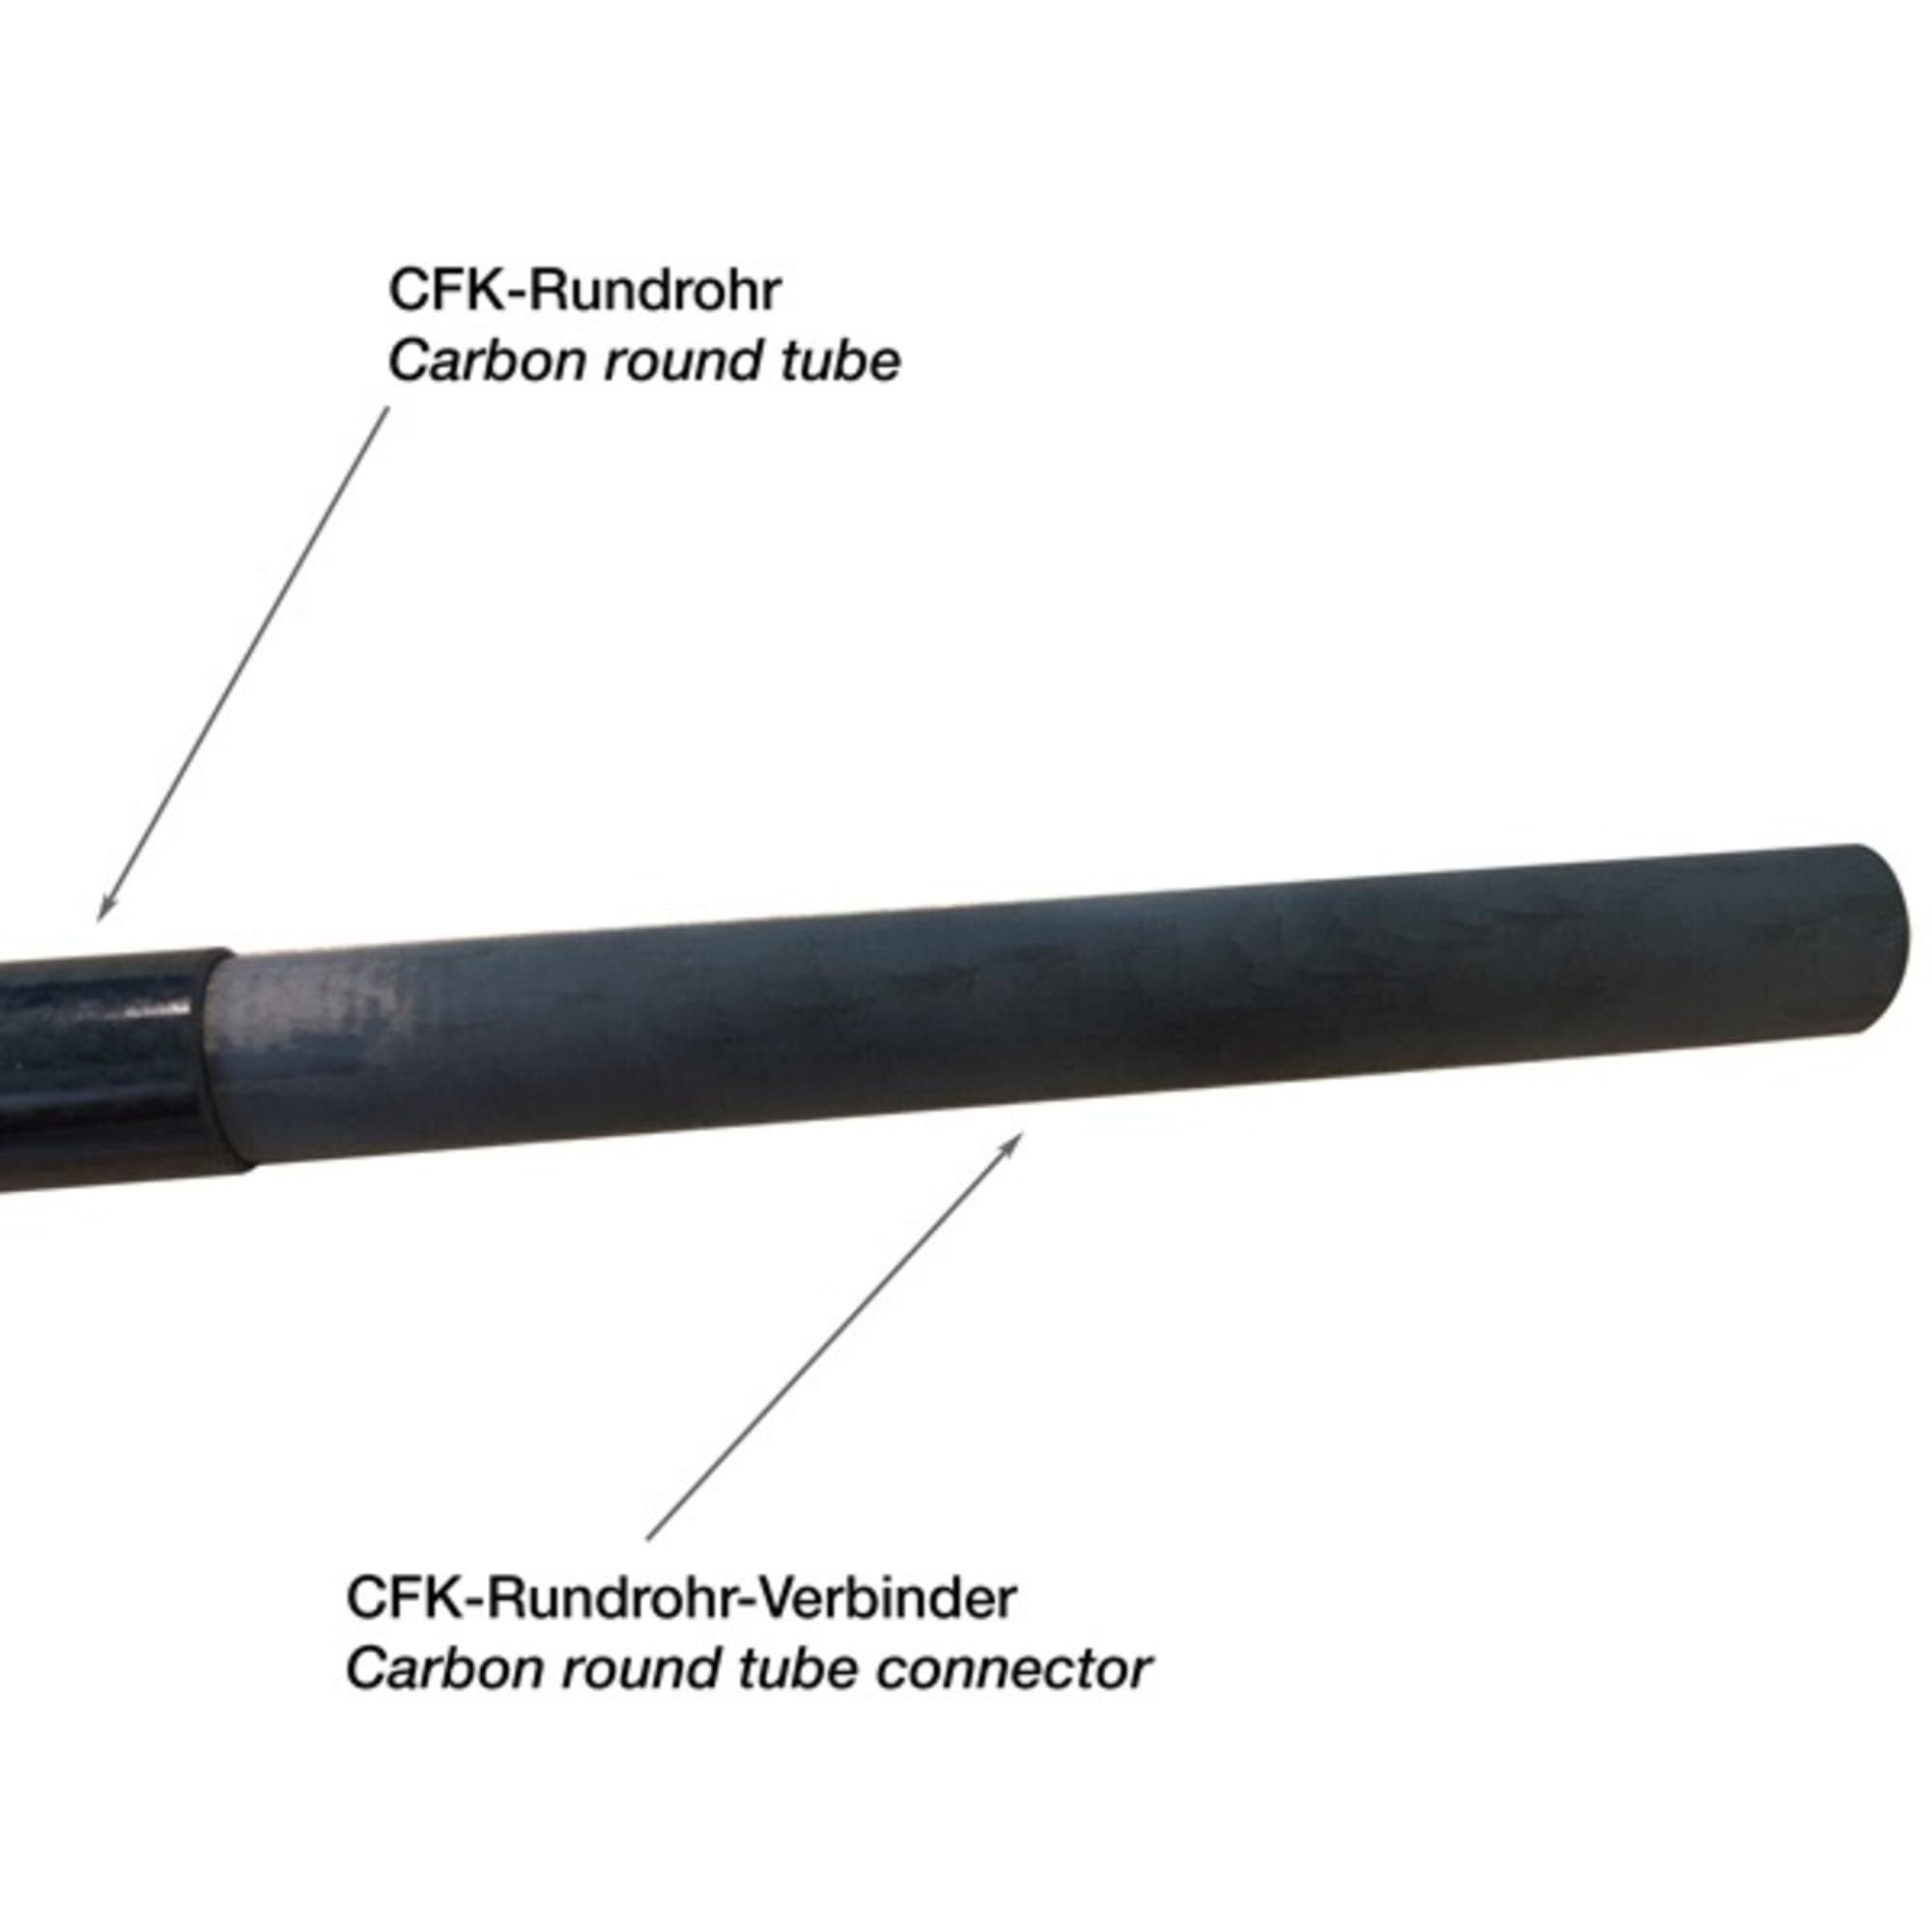 CARBON CFK-Rundrohr-Verbinder für Innendurchmesser 18 und 28 mm, Bild 2